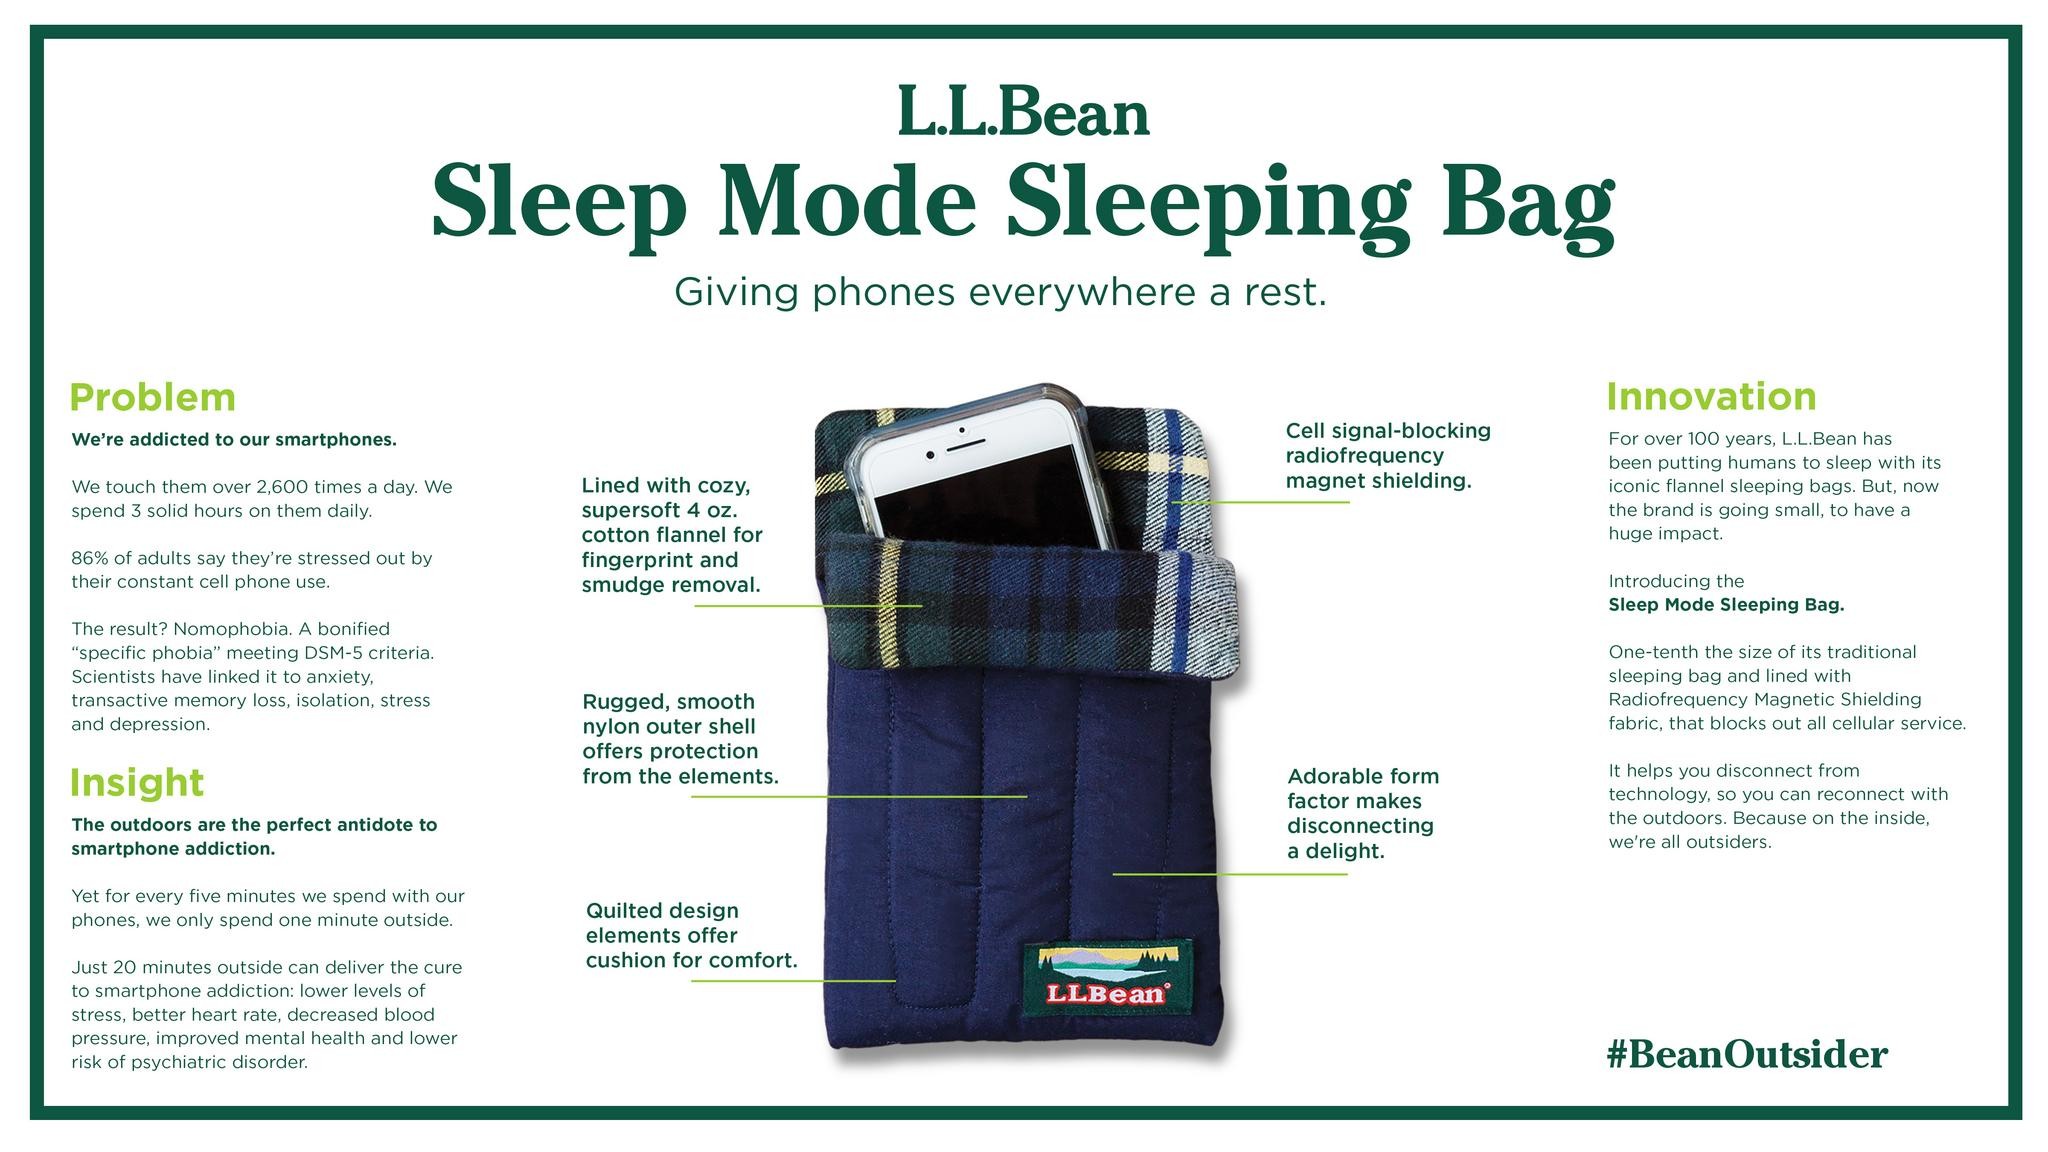 Sleep Mode Sleeping Bag